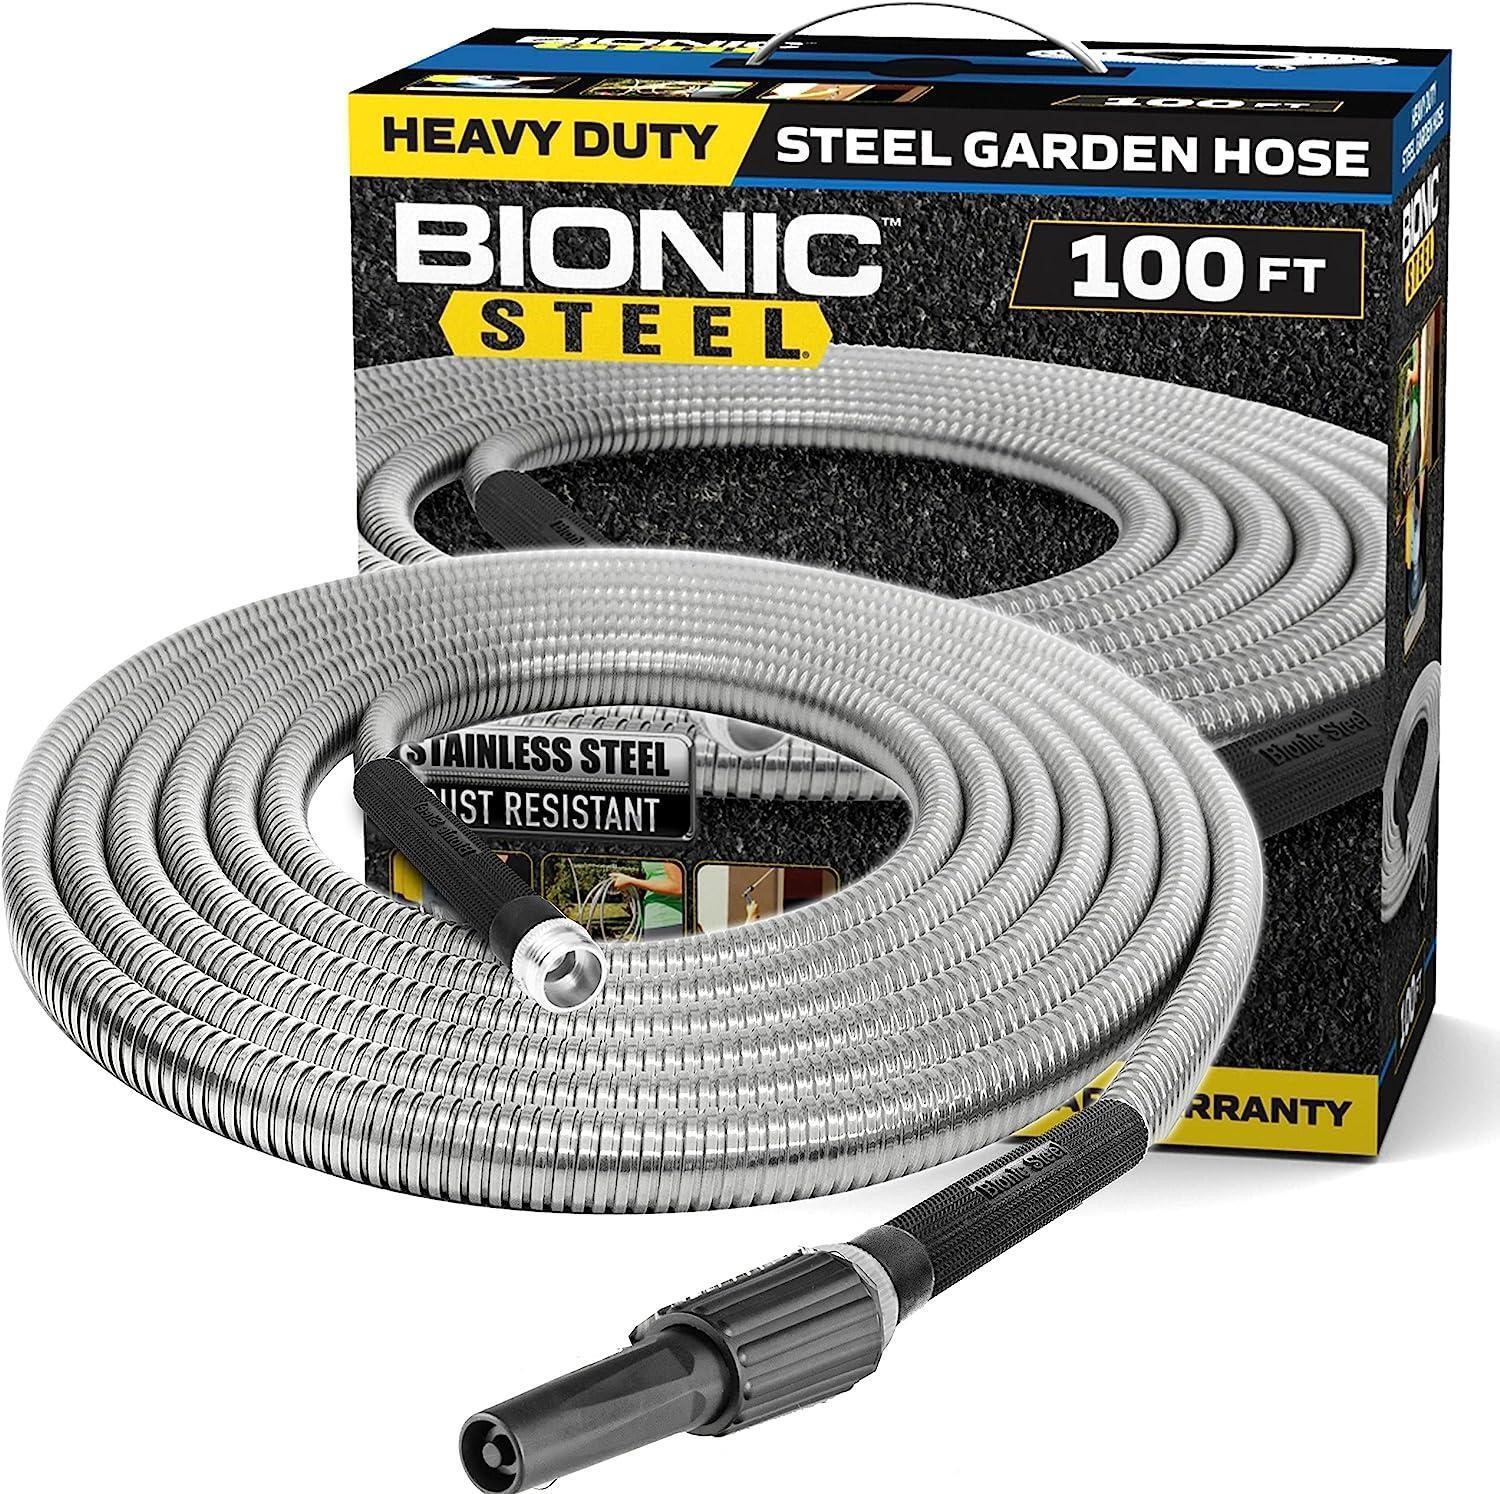 2021 Bionic Steel Garden Hose 100ft